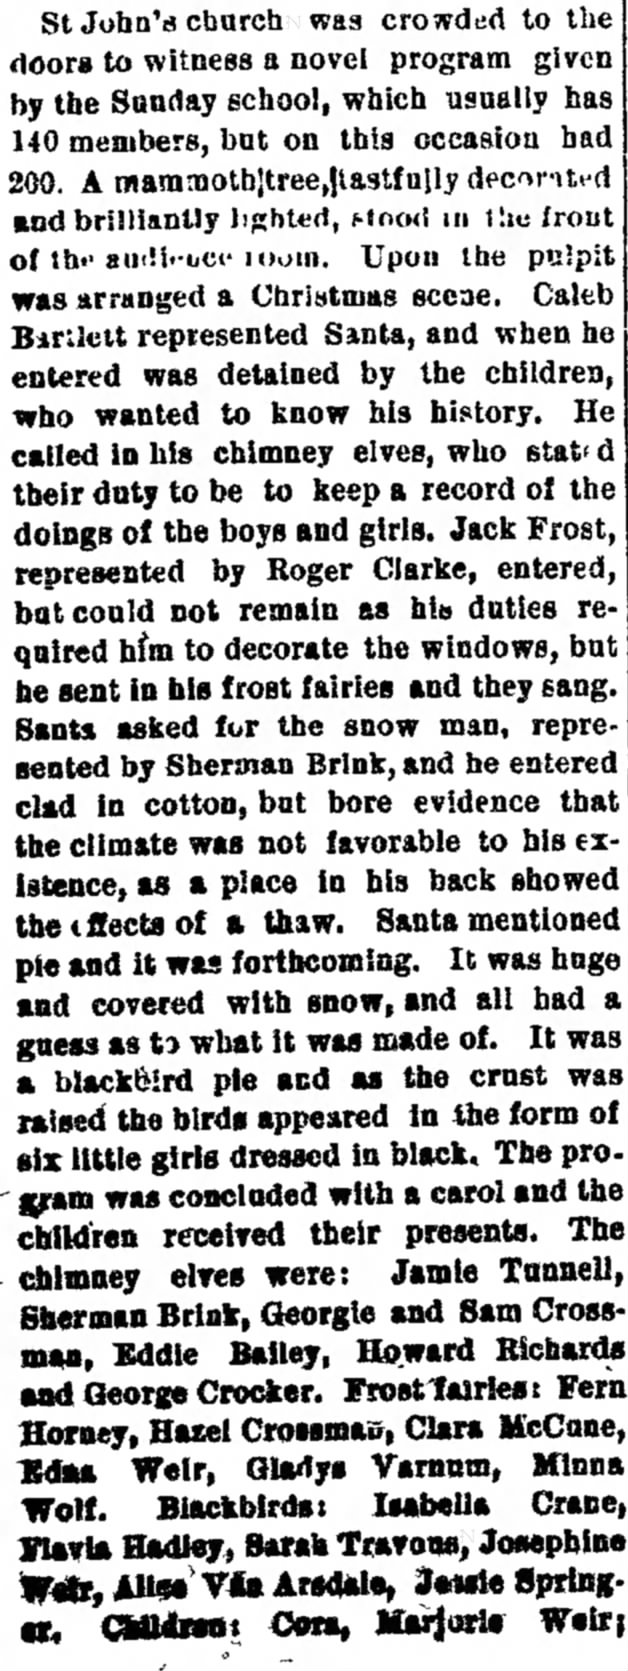 28 Dec 1894 
Caleb Bartlett as Santa